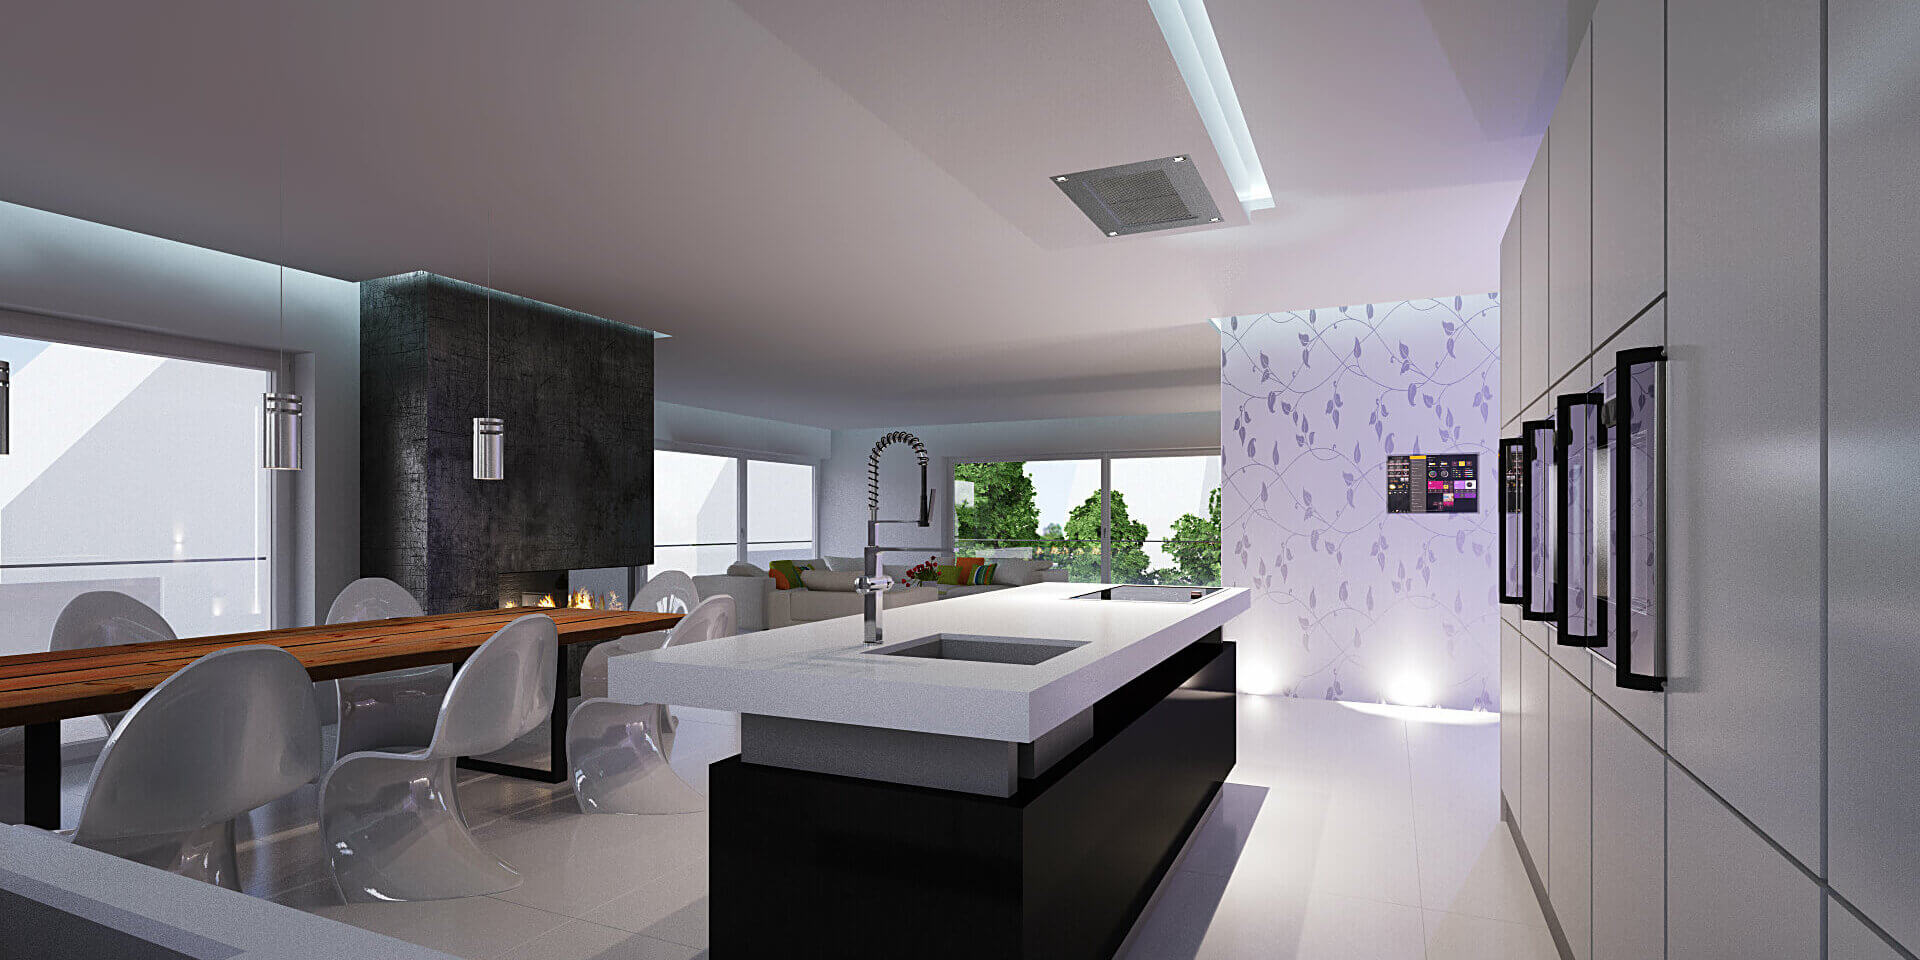 Interior Design für eine moderne Küche in schwarz-weiß